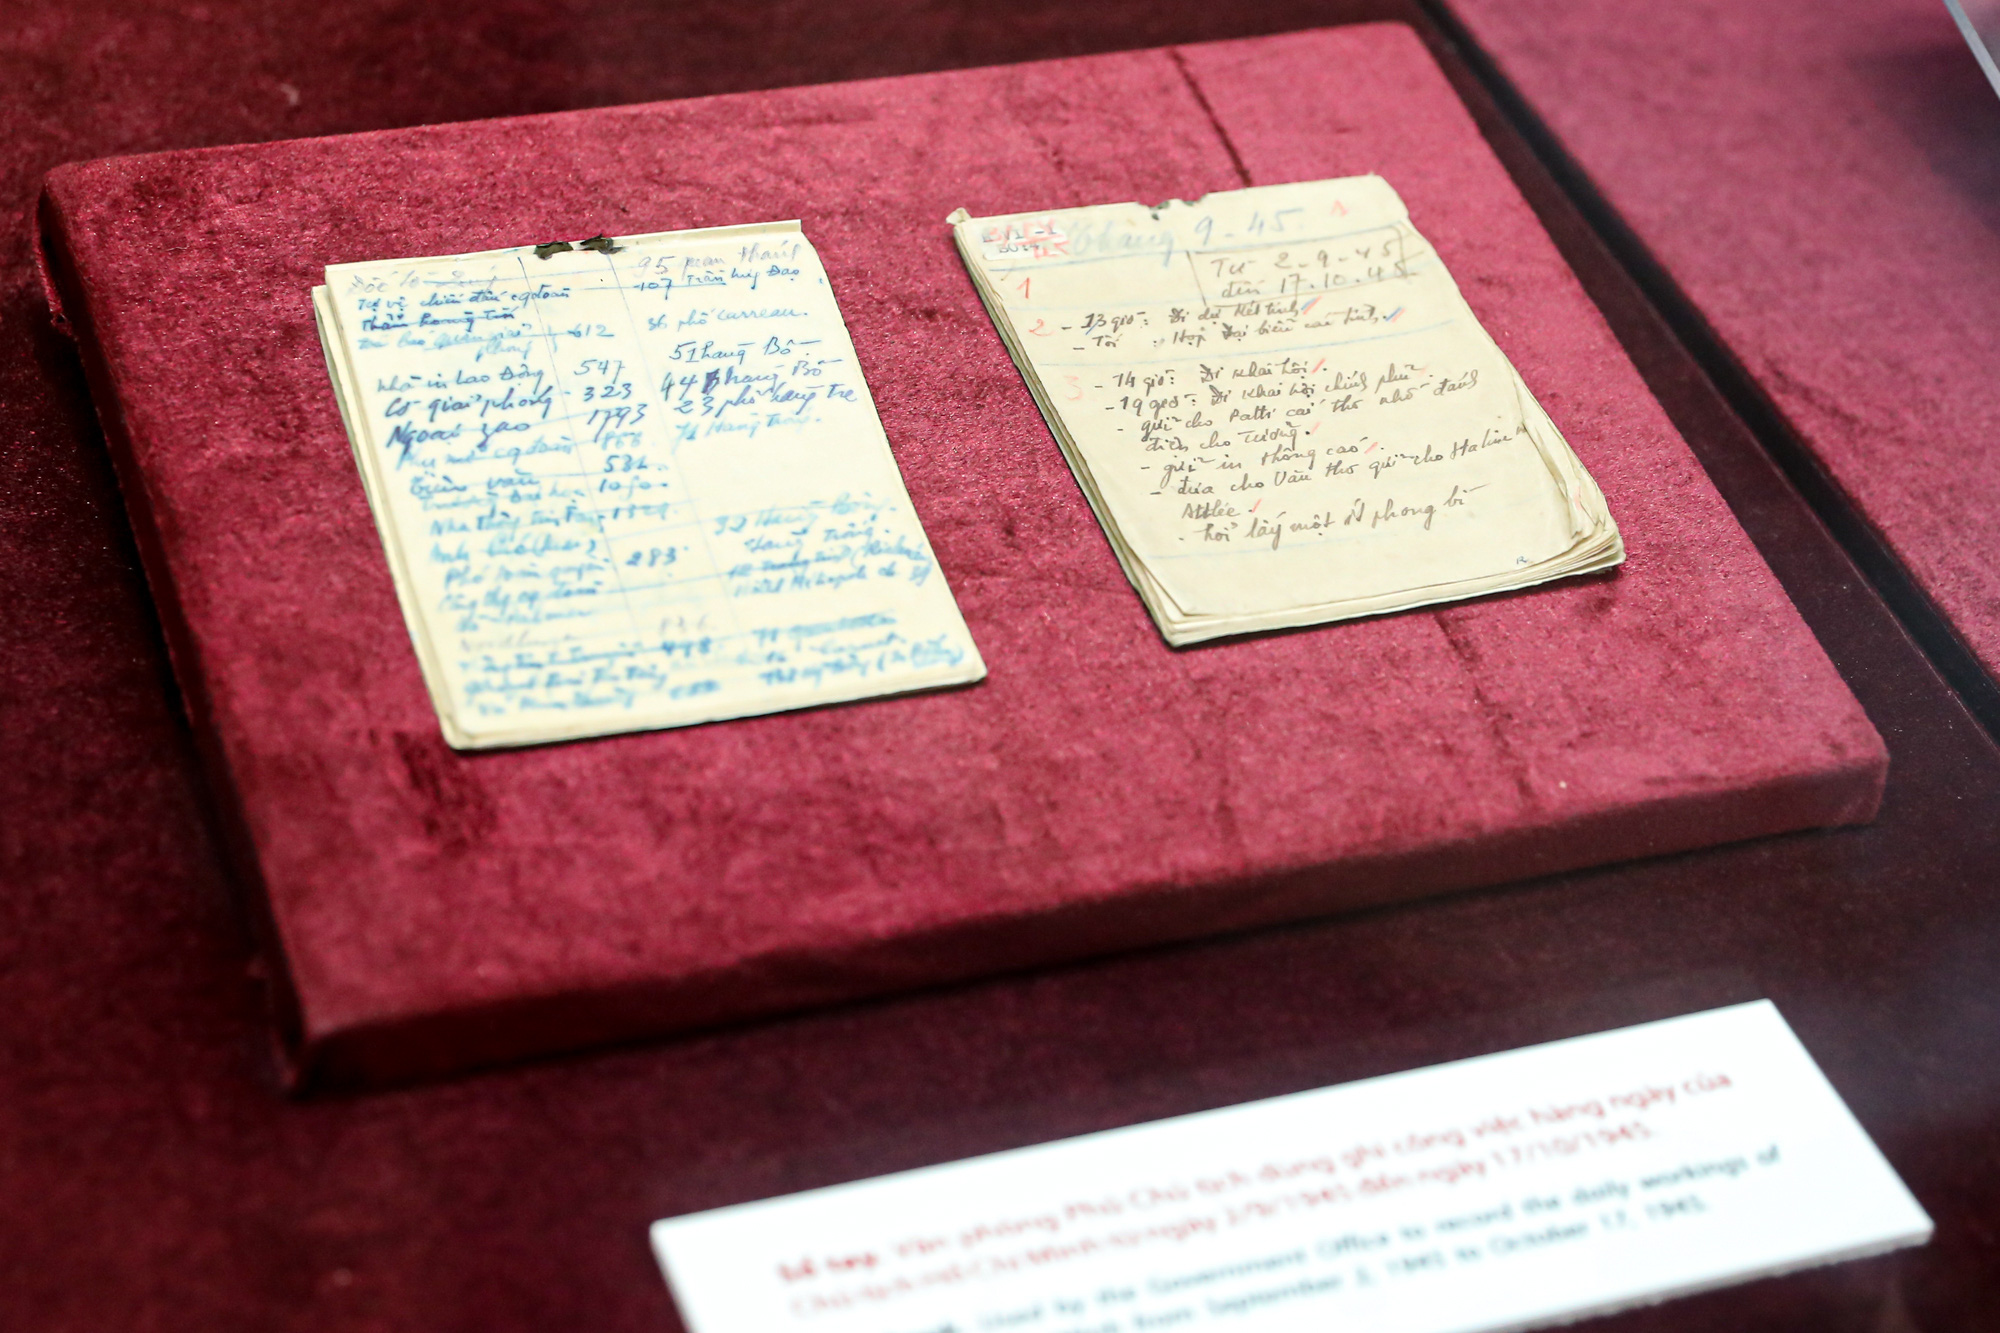 Cuốn sổ tay của Văn phòng Phủ Chủ tịch ghi công việc hàng ngày của Chủ tịch Hồ Chí Minh từ ngày 2/9/1945 - 17/10/1945